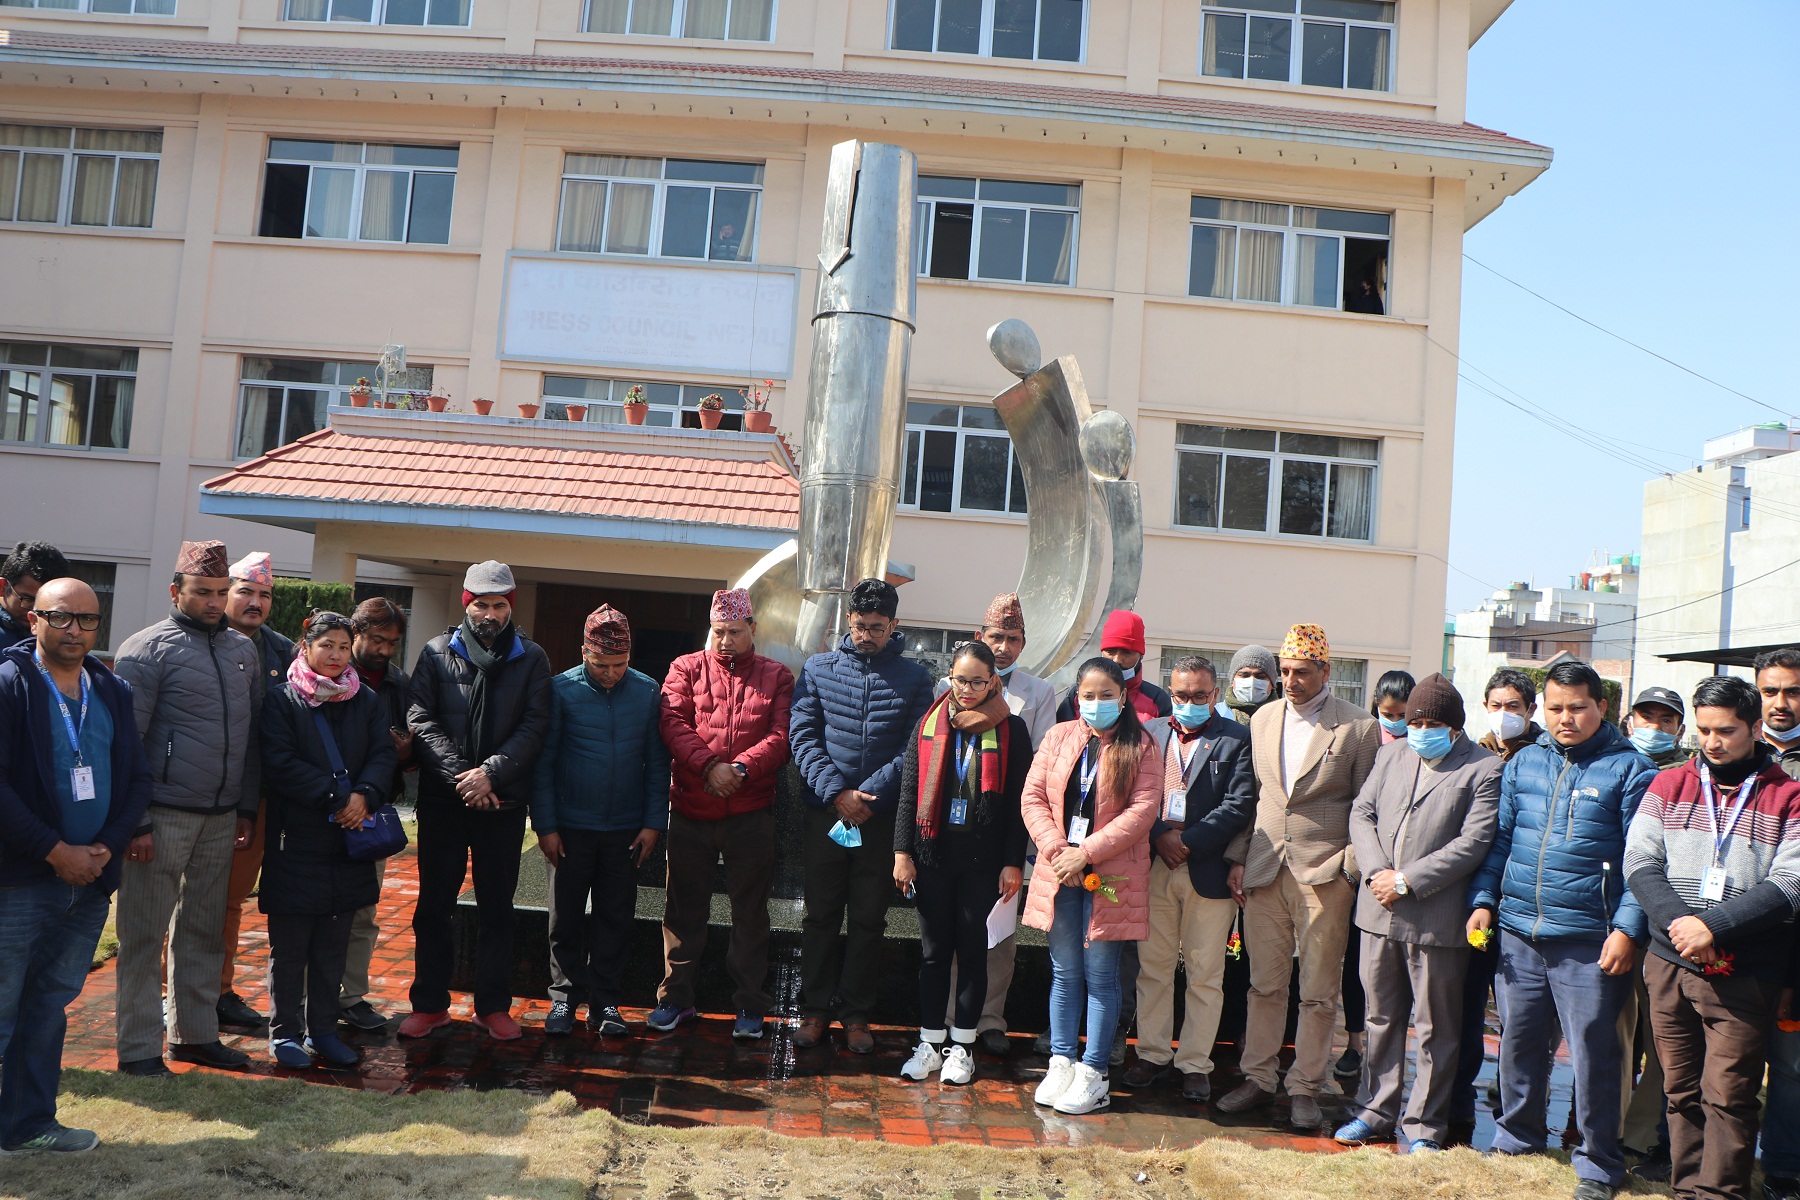 शहीद दिवसका अवसरमा नेपाल पत्रकार महासंघद्वारा शहीदहरुप्रति सम्मान व्यक्त 